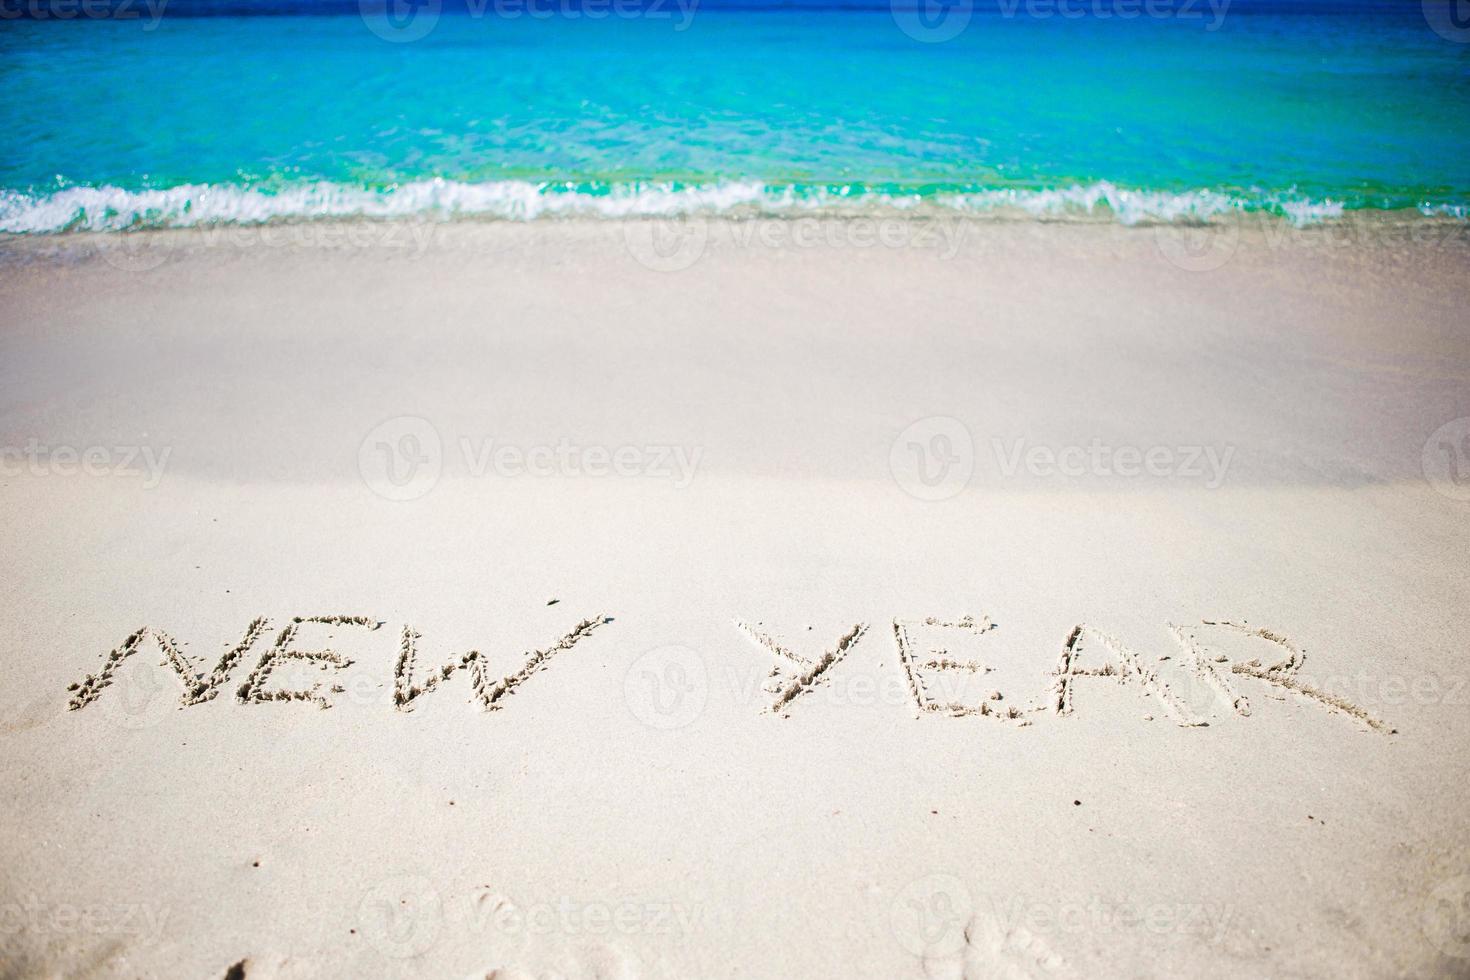 contento nuovo anno scritto nel il bianca sabbia foto